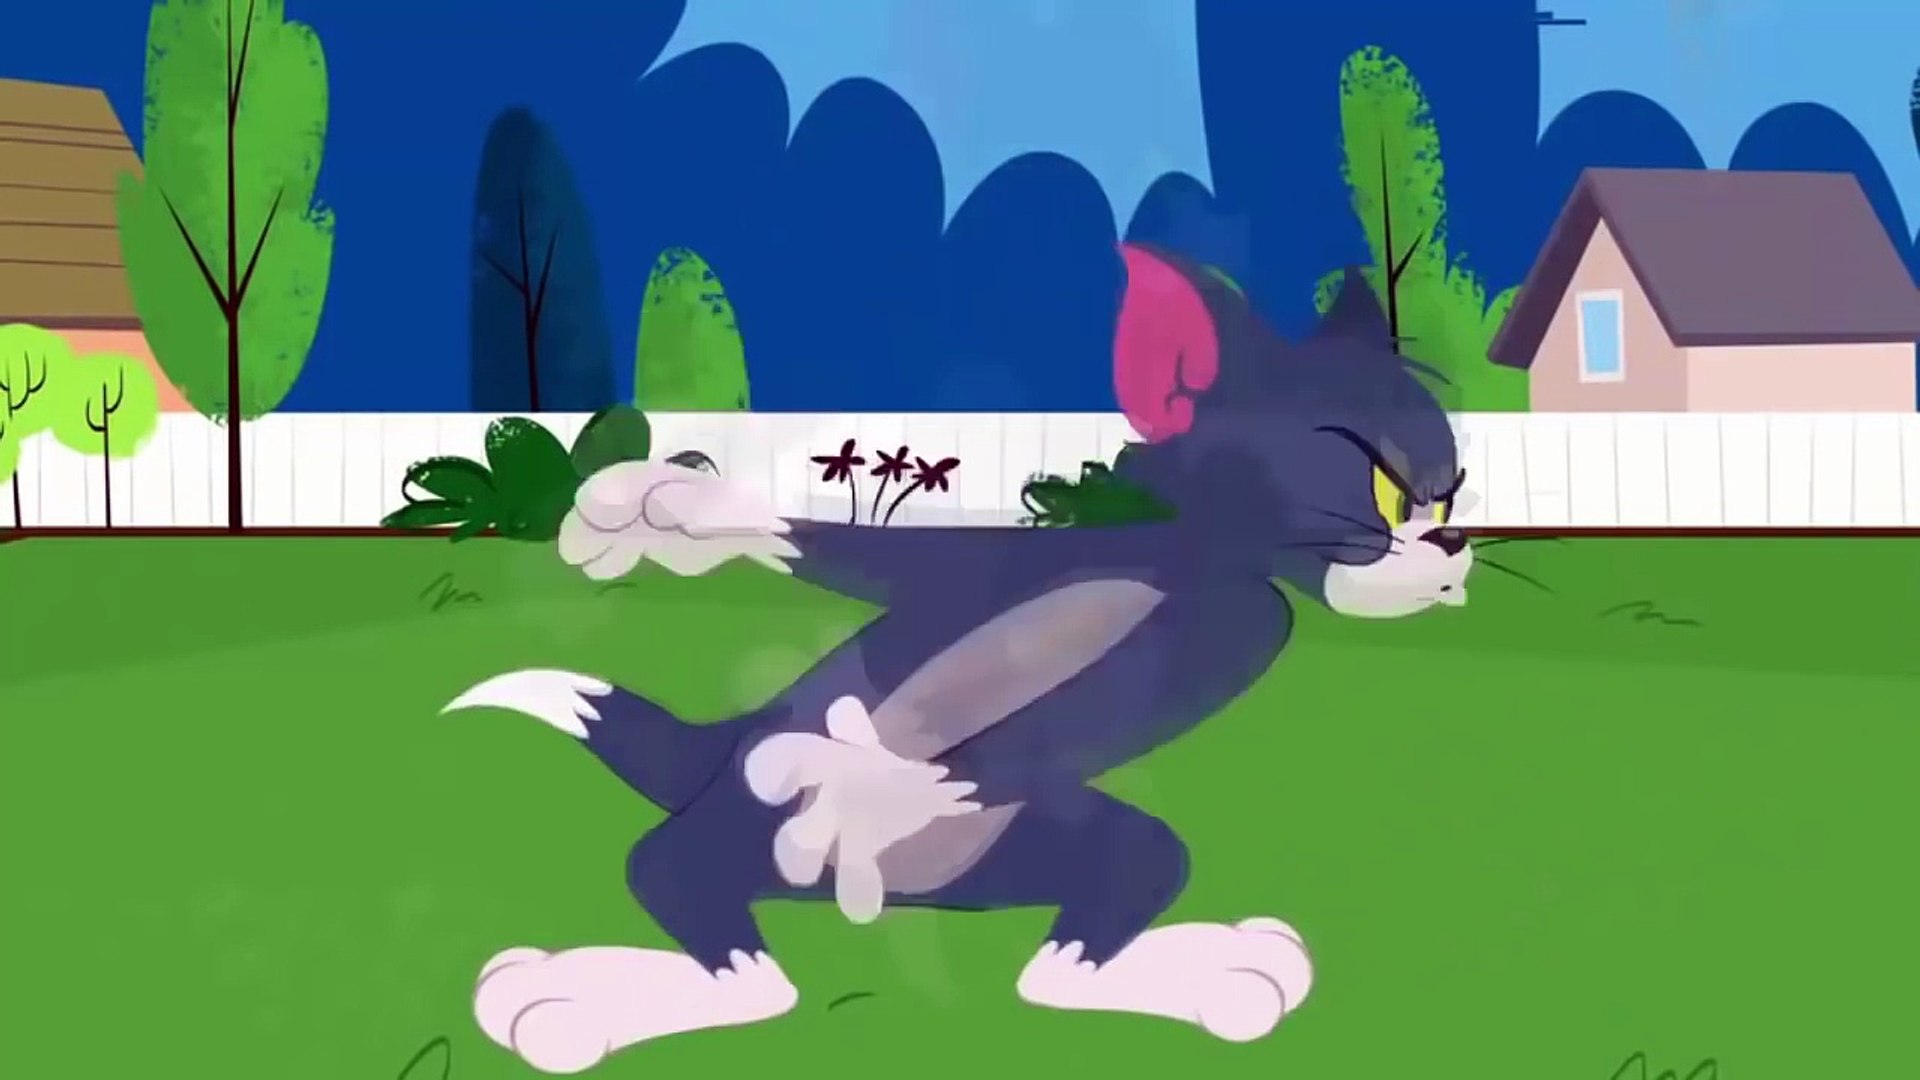 Tom and Jerry Tales - Tập 20 new 2016 - (Phim Hoạt Hình Lồng Tiếng Việt) -  video Dailymotion